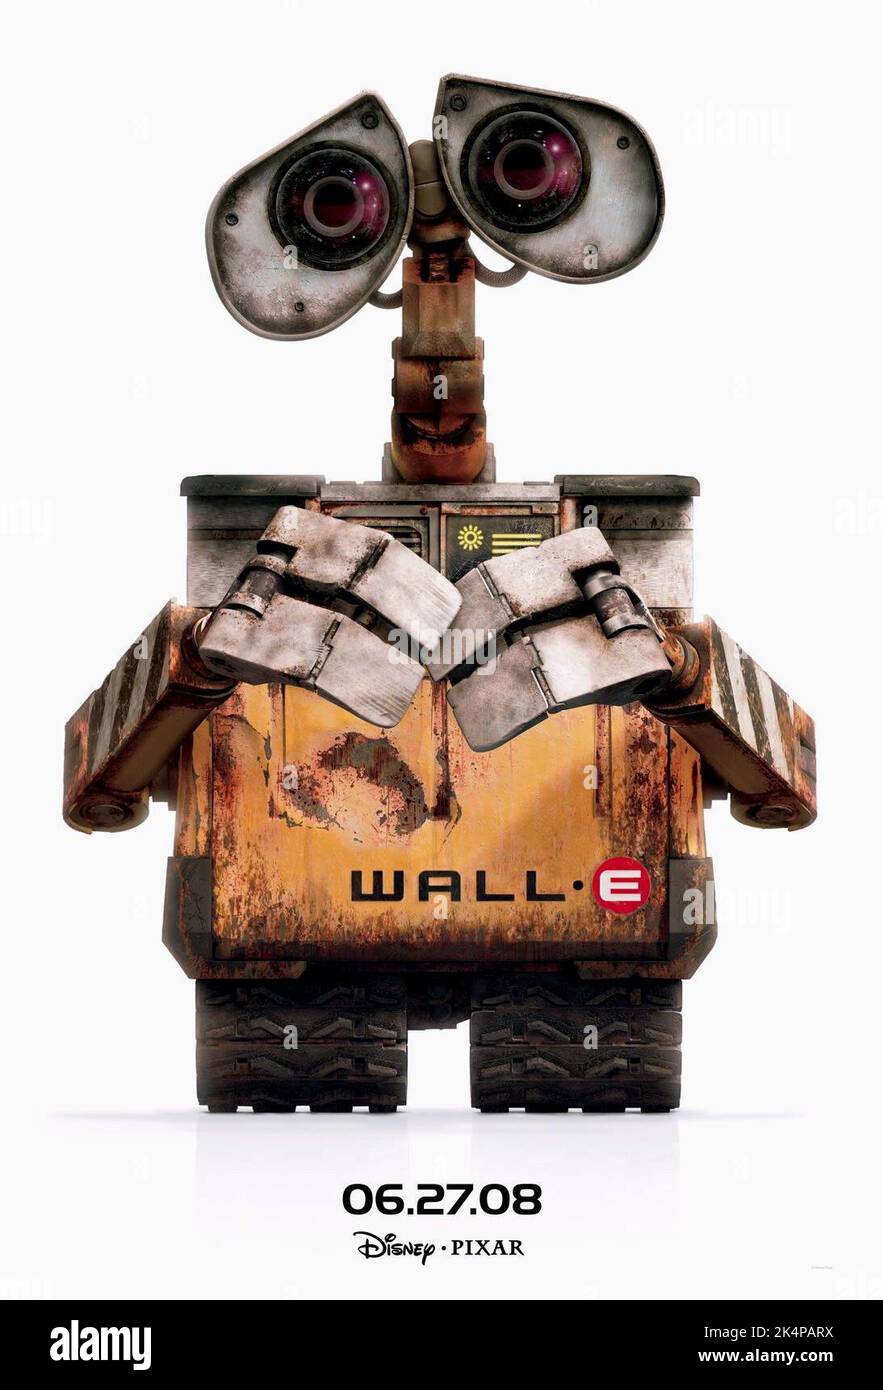 Mur e mur e le robot 2008 Banque d'images détourées - Alamy